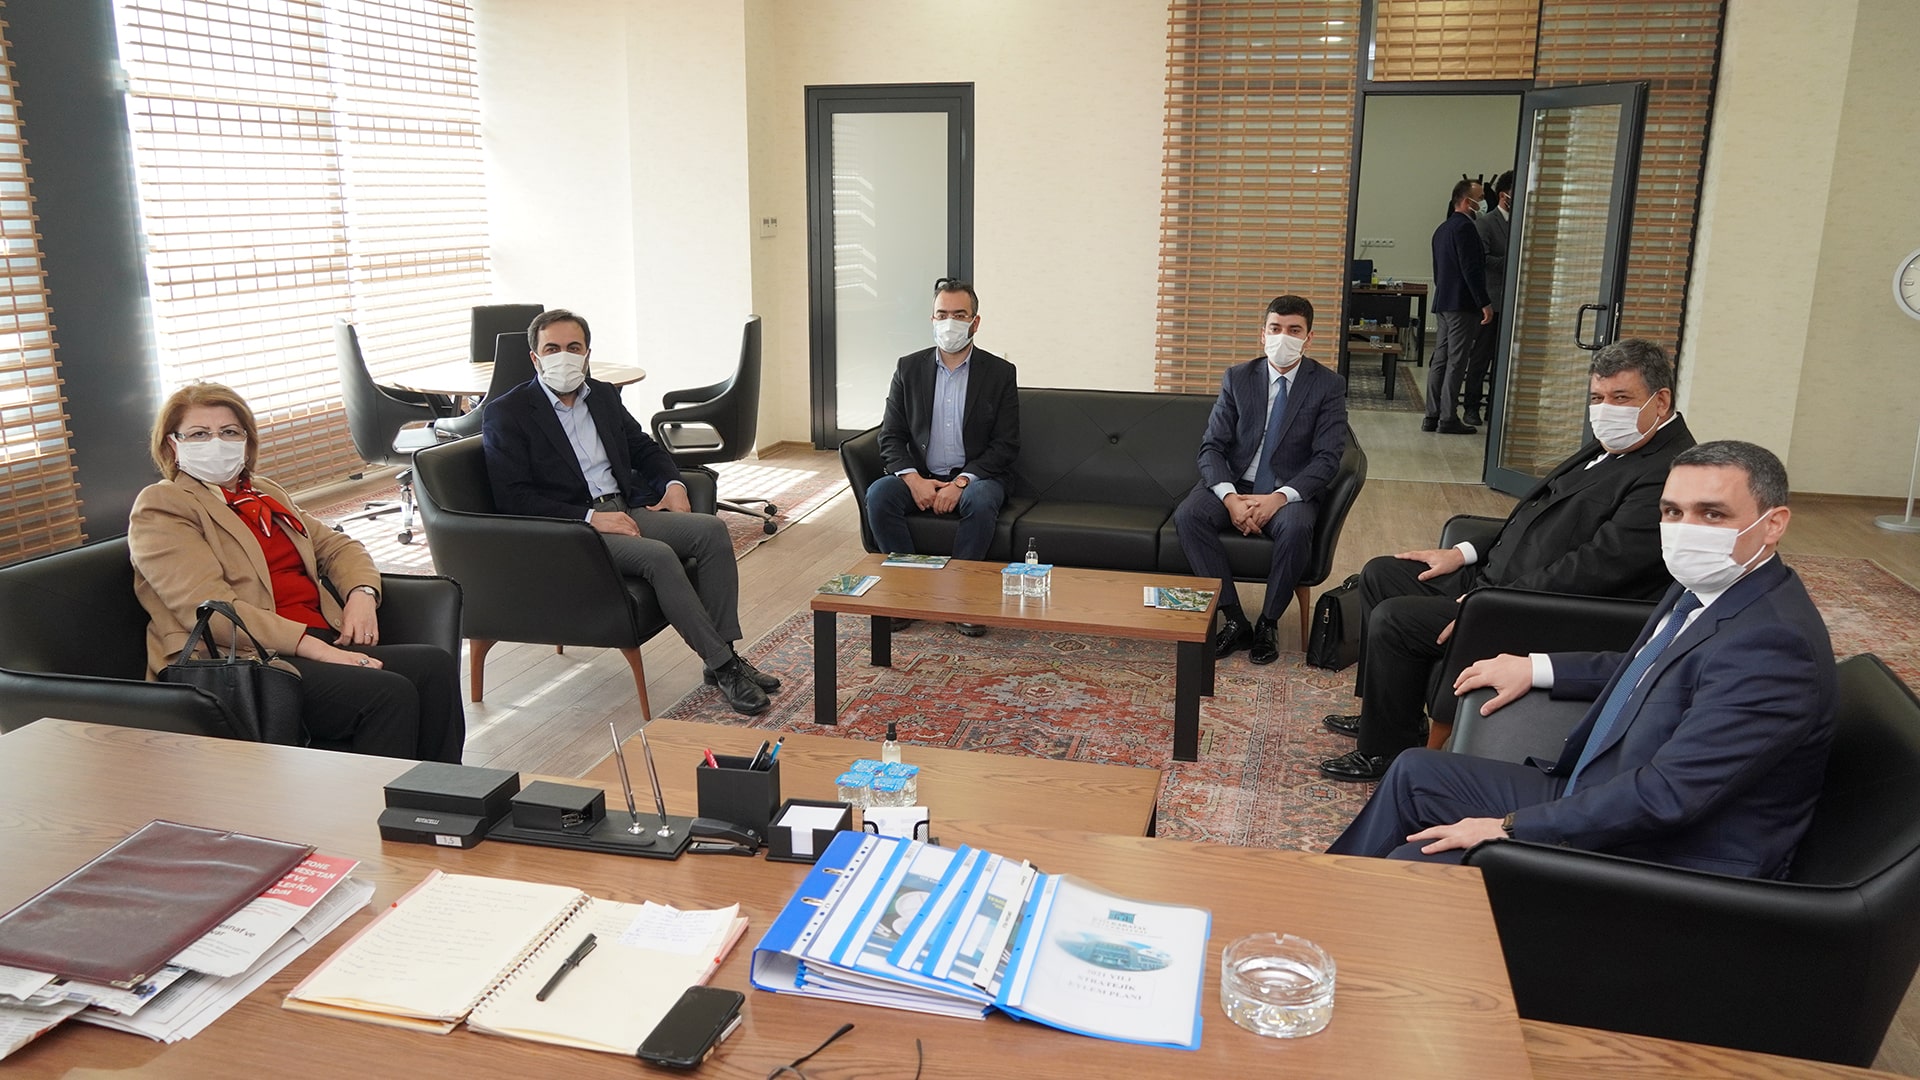 Azerbaycan Mingeçevir Devlet Üniversitesi Rektörü Prof. Dr. Şahin Bayramov beraberinde Azerbaycan Büyükelçiliği Eğitim Müşaviri  Doç. Dr. Necibe Nesibova ile KTOTEK'i ziyaret ettiler.